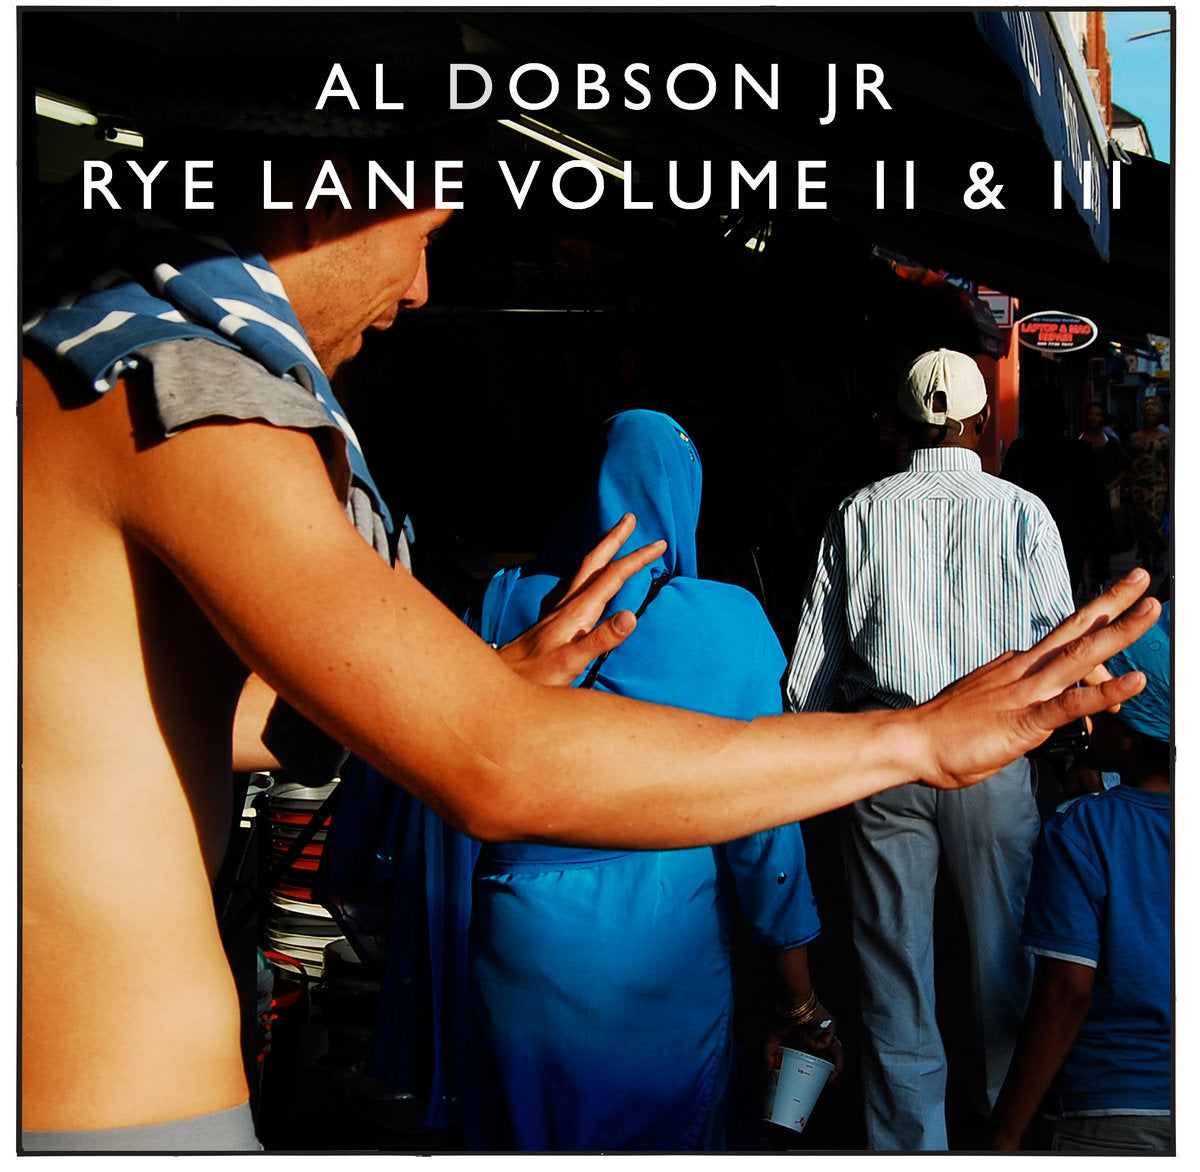 Rye Lane Volume II & III (New 2LP)